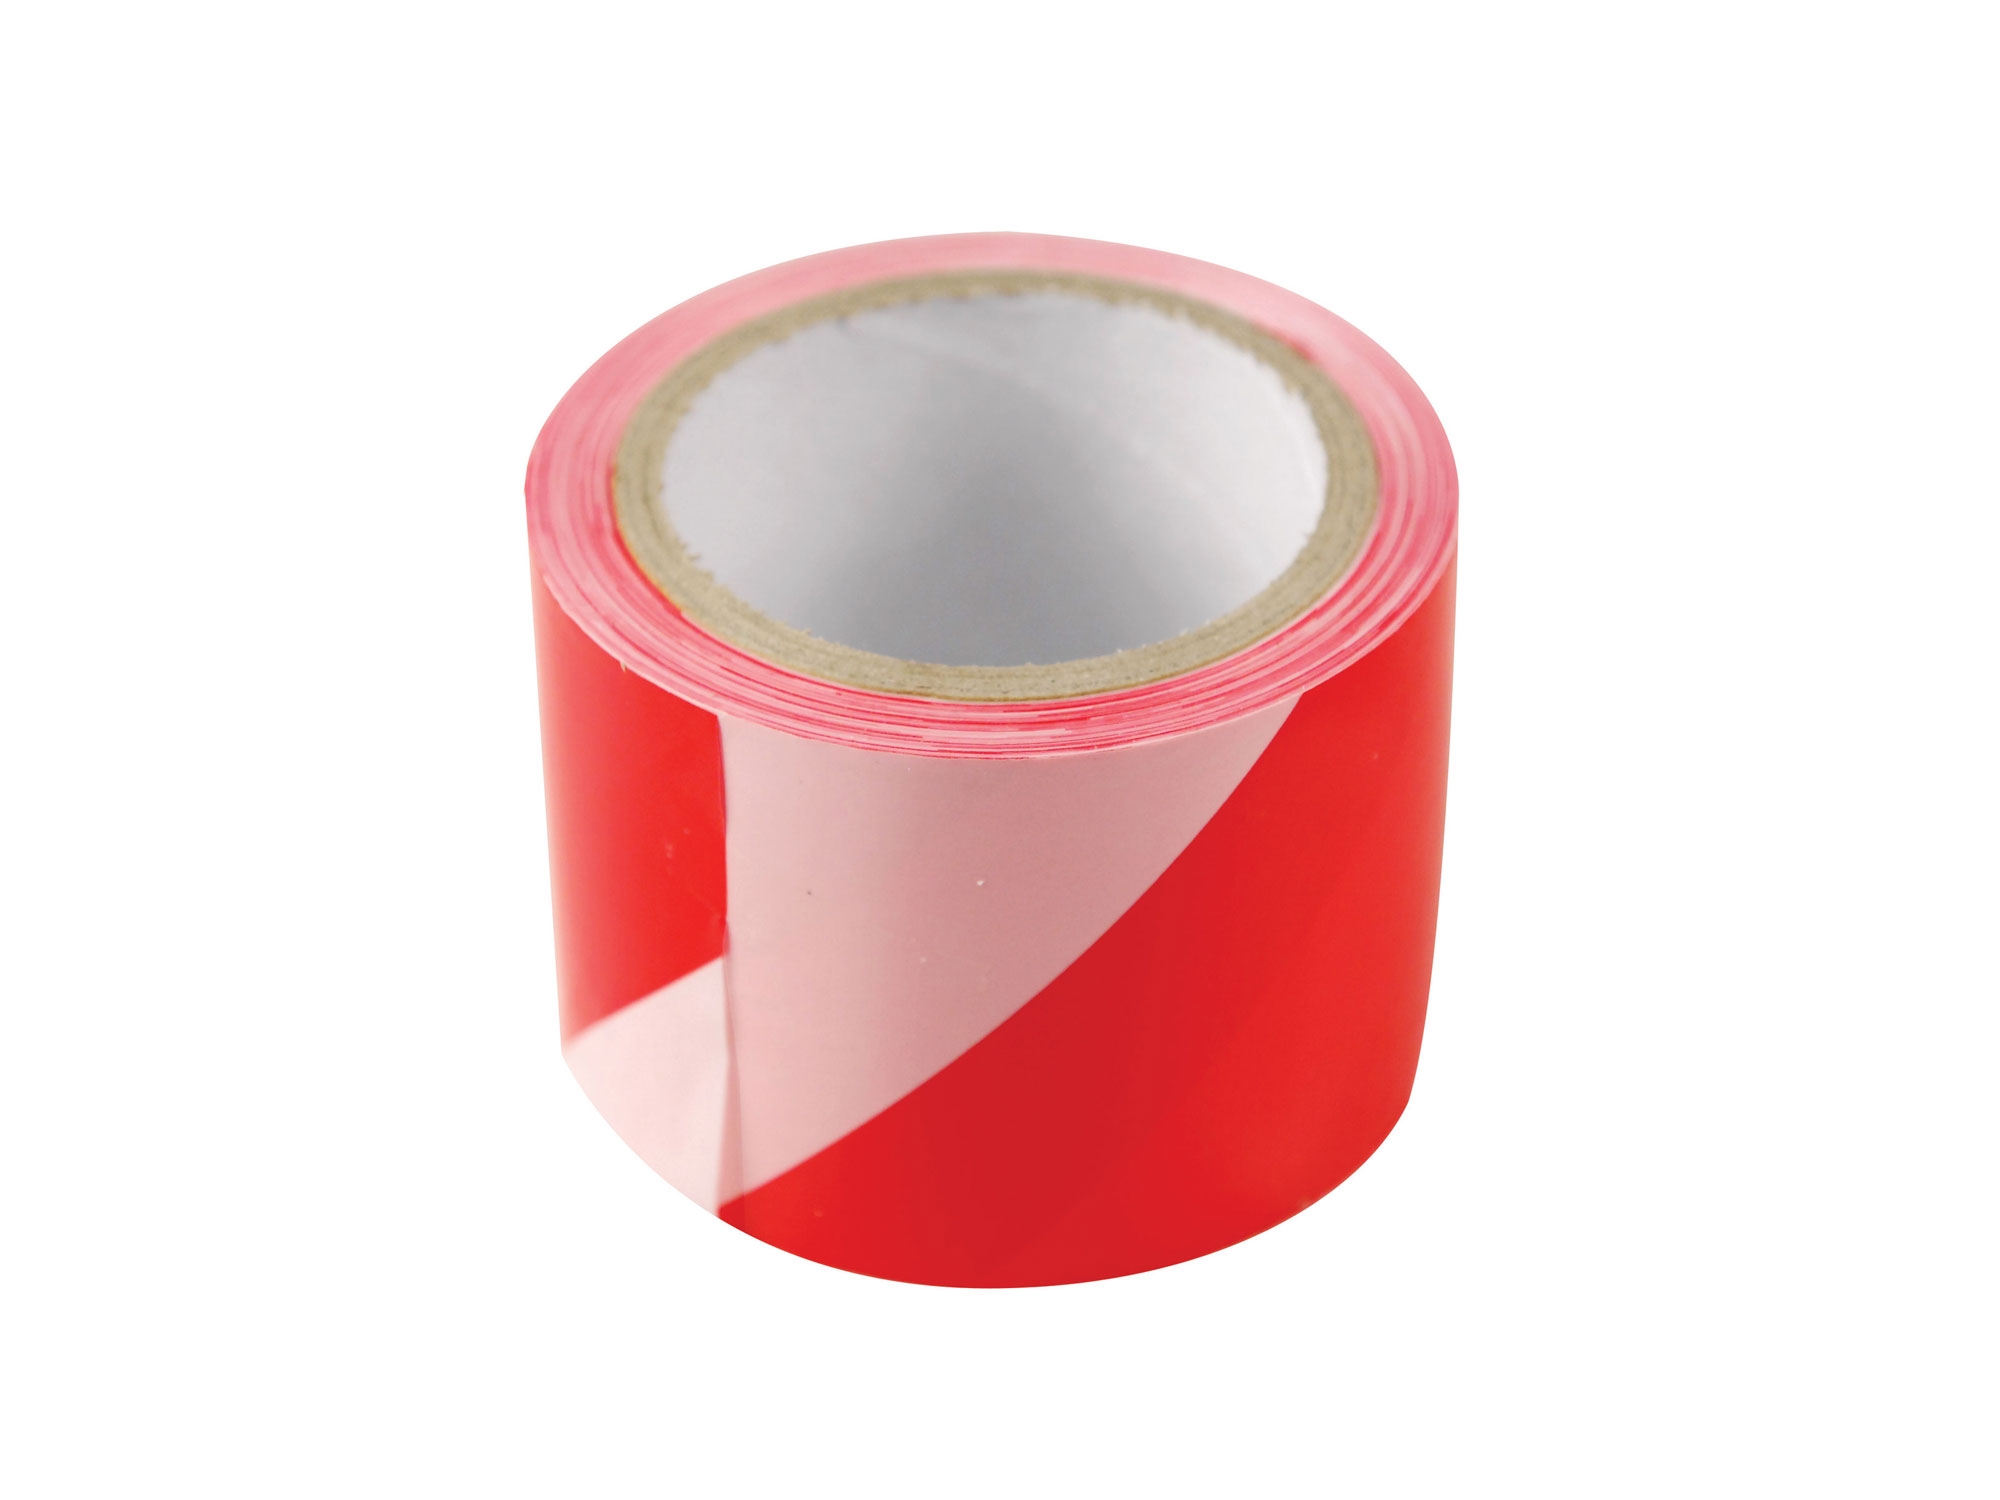 páska výstražná červeno-bílá ZÁKAZ VSTUPU, 75mm x